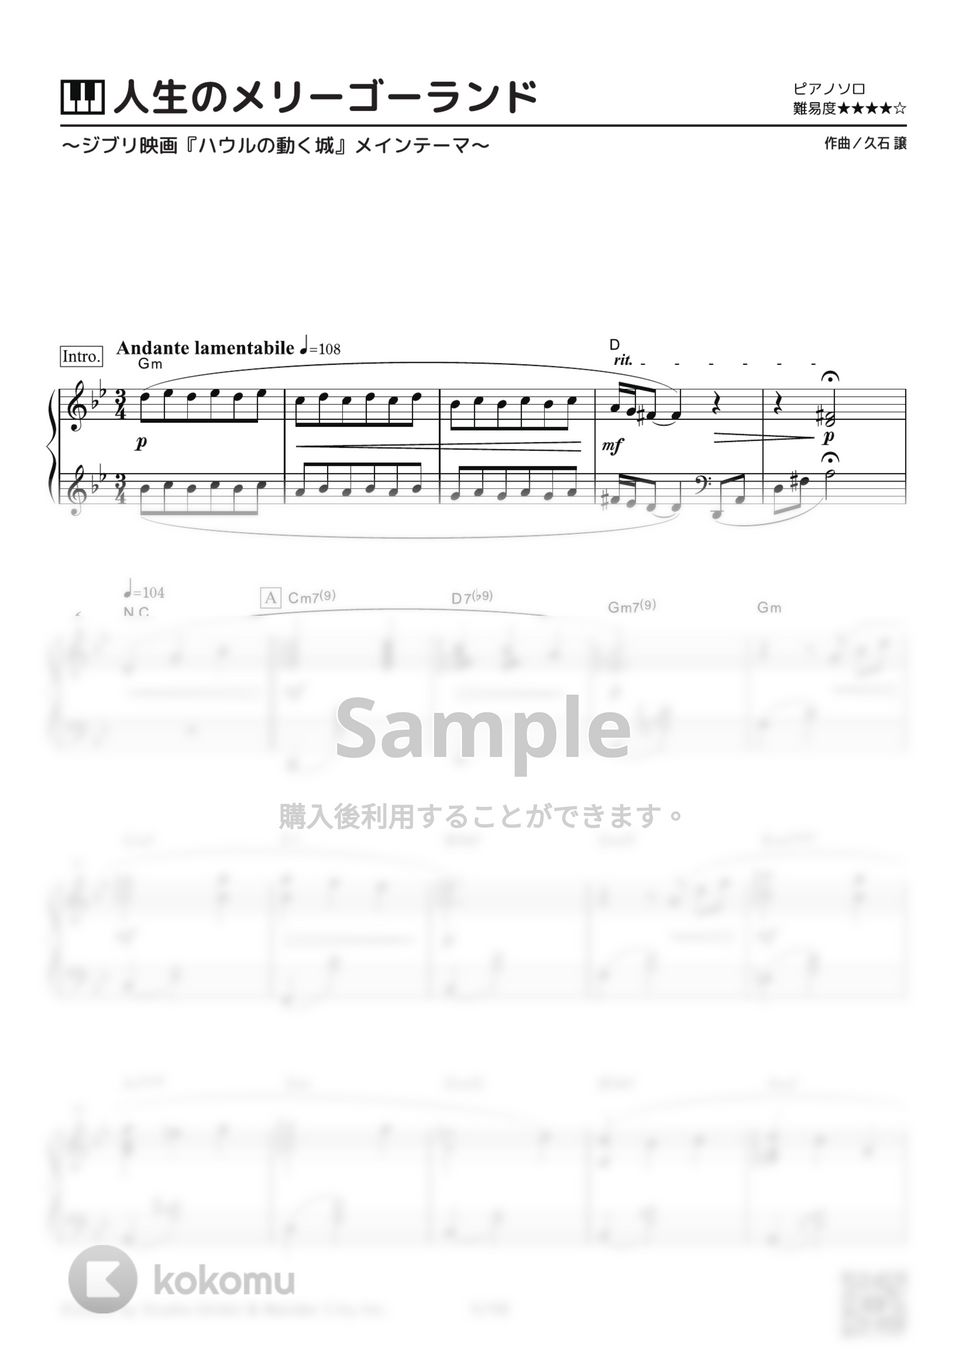 久石譲 - 人生のメリーゴーランド (Jinsei no Merry Go Round) by ピアノの本棚